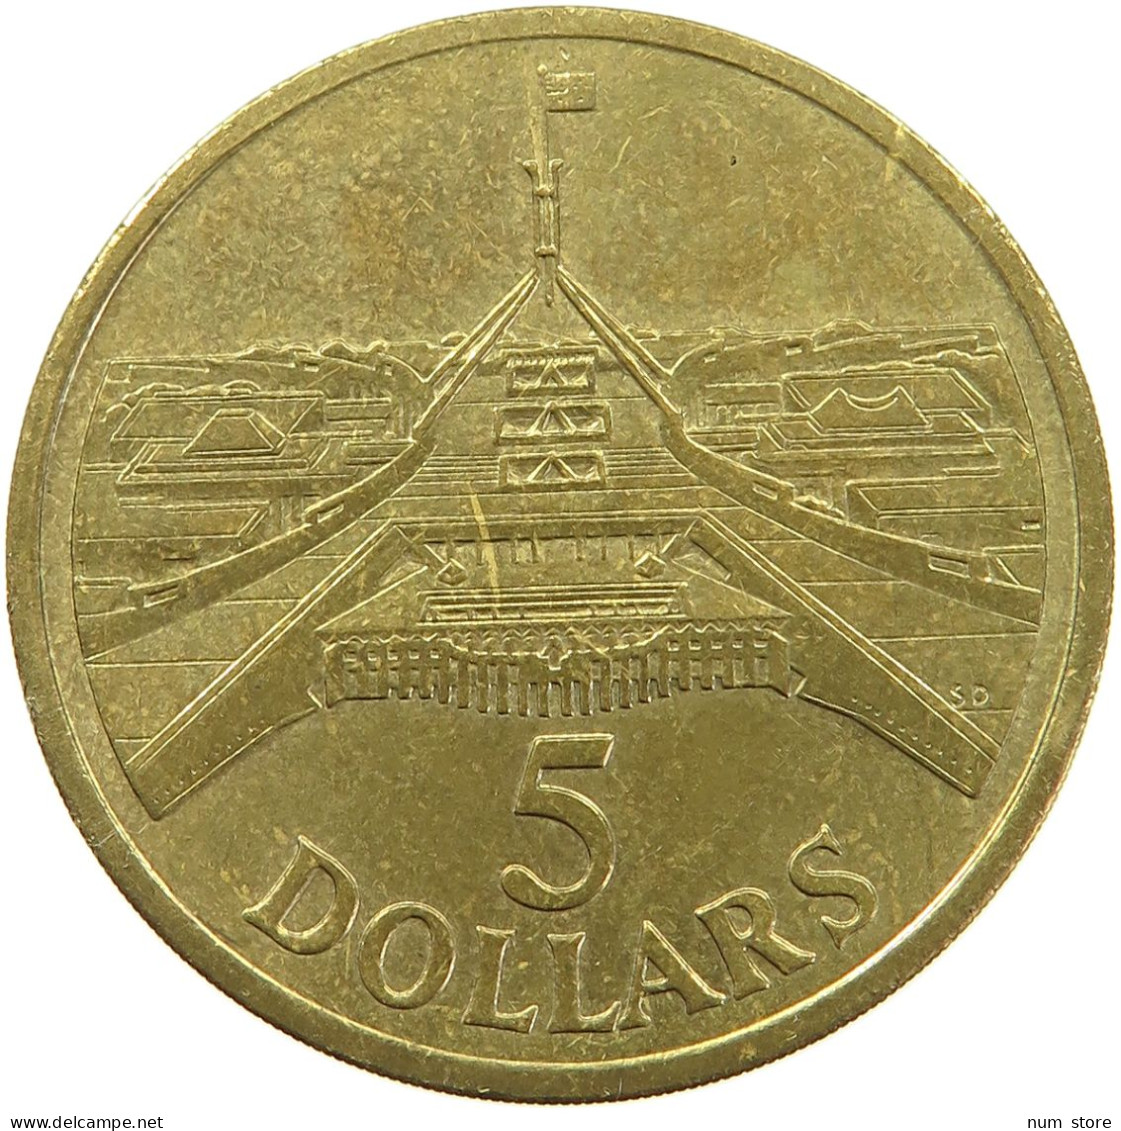 AUSTRALIA 5 DOLLARS 1988 #s093 0529 - 5 Dollars